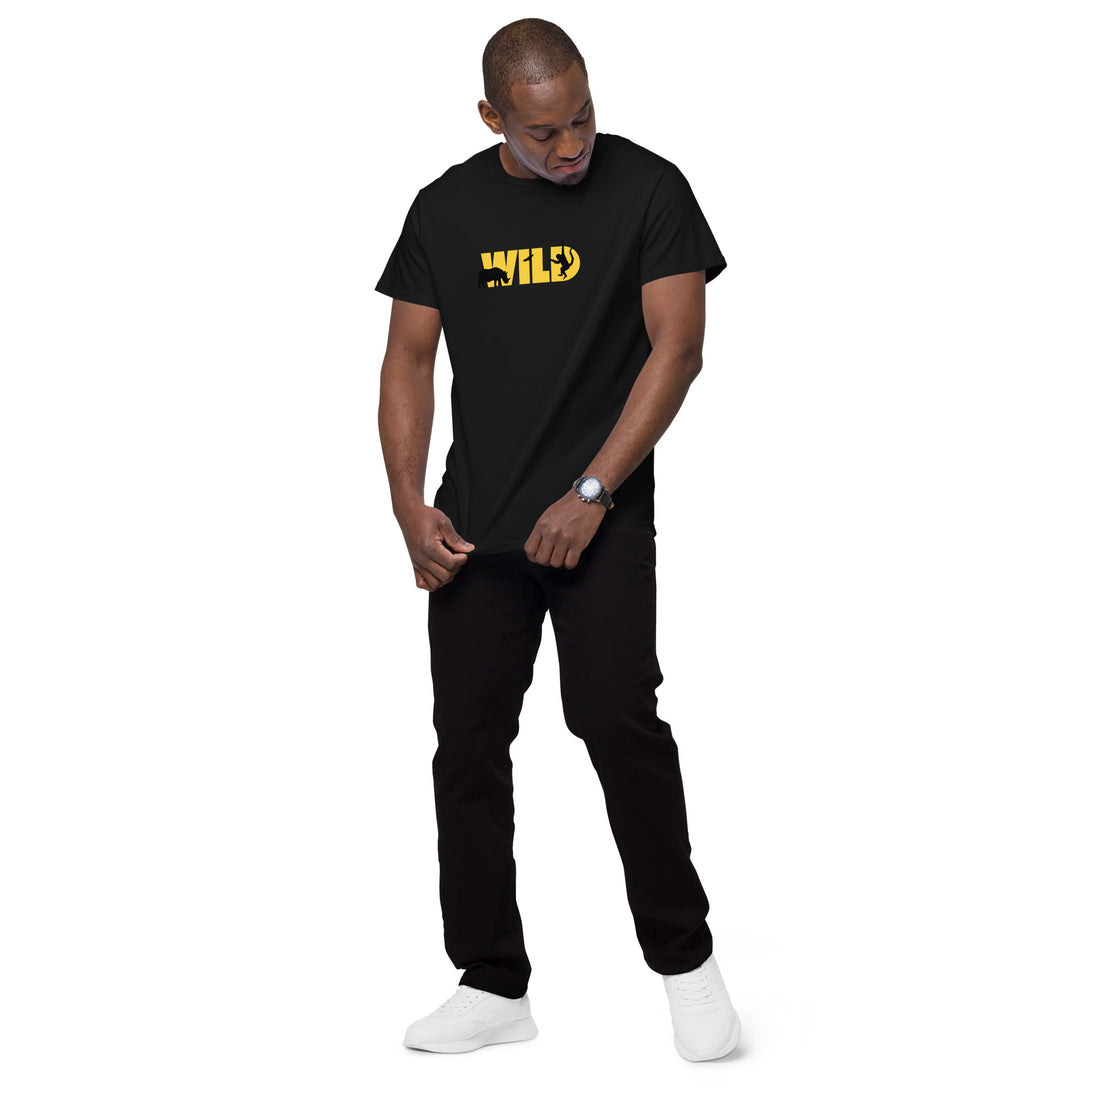 Wild Life Graphic T-shirt